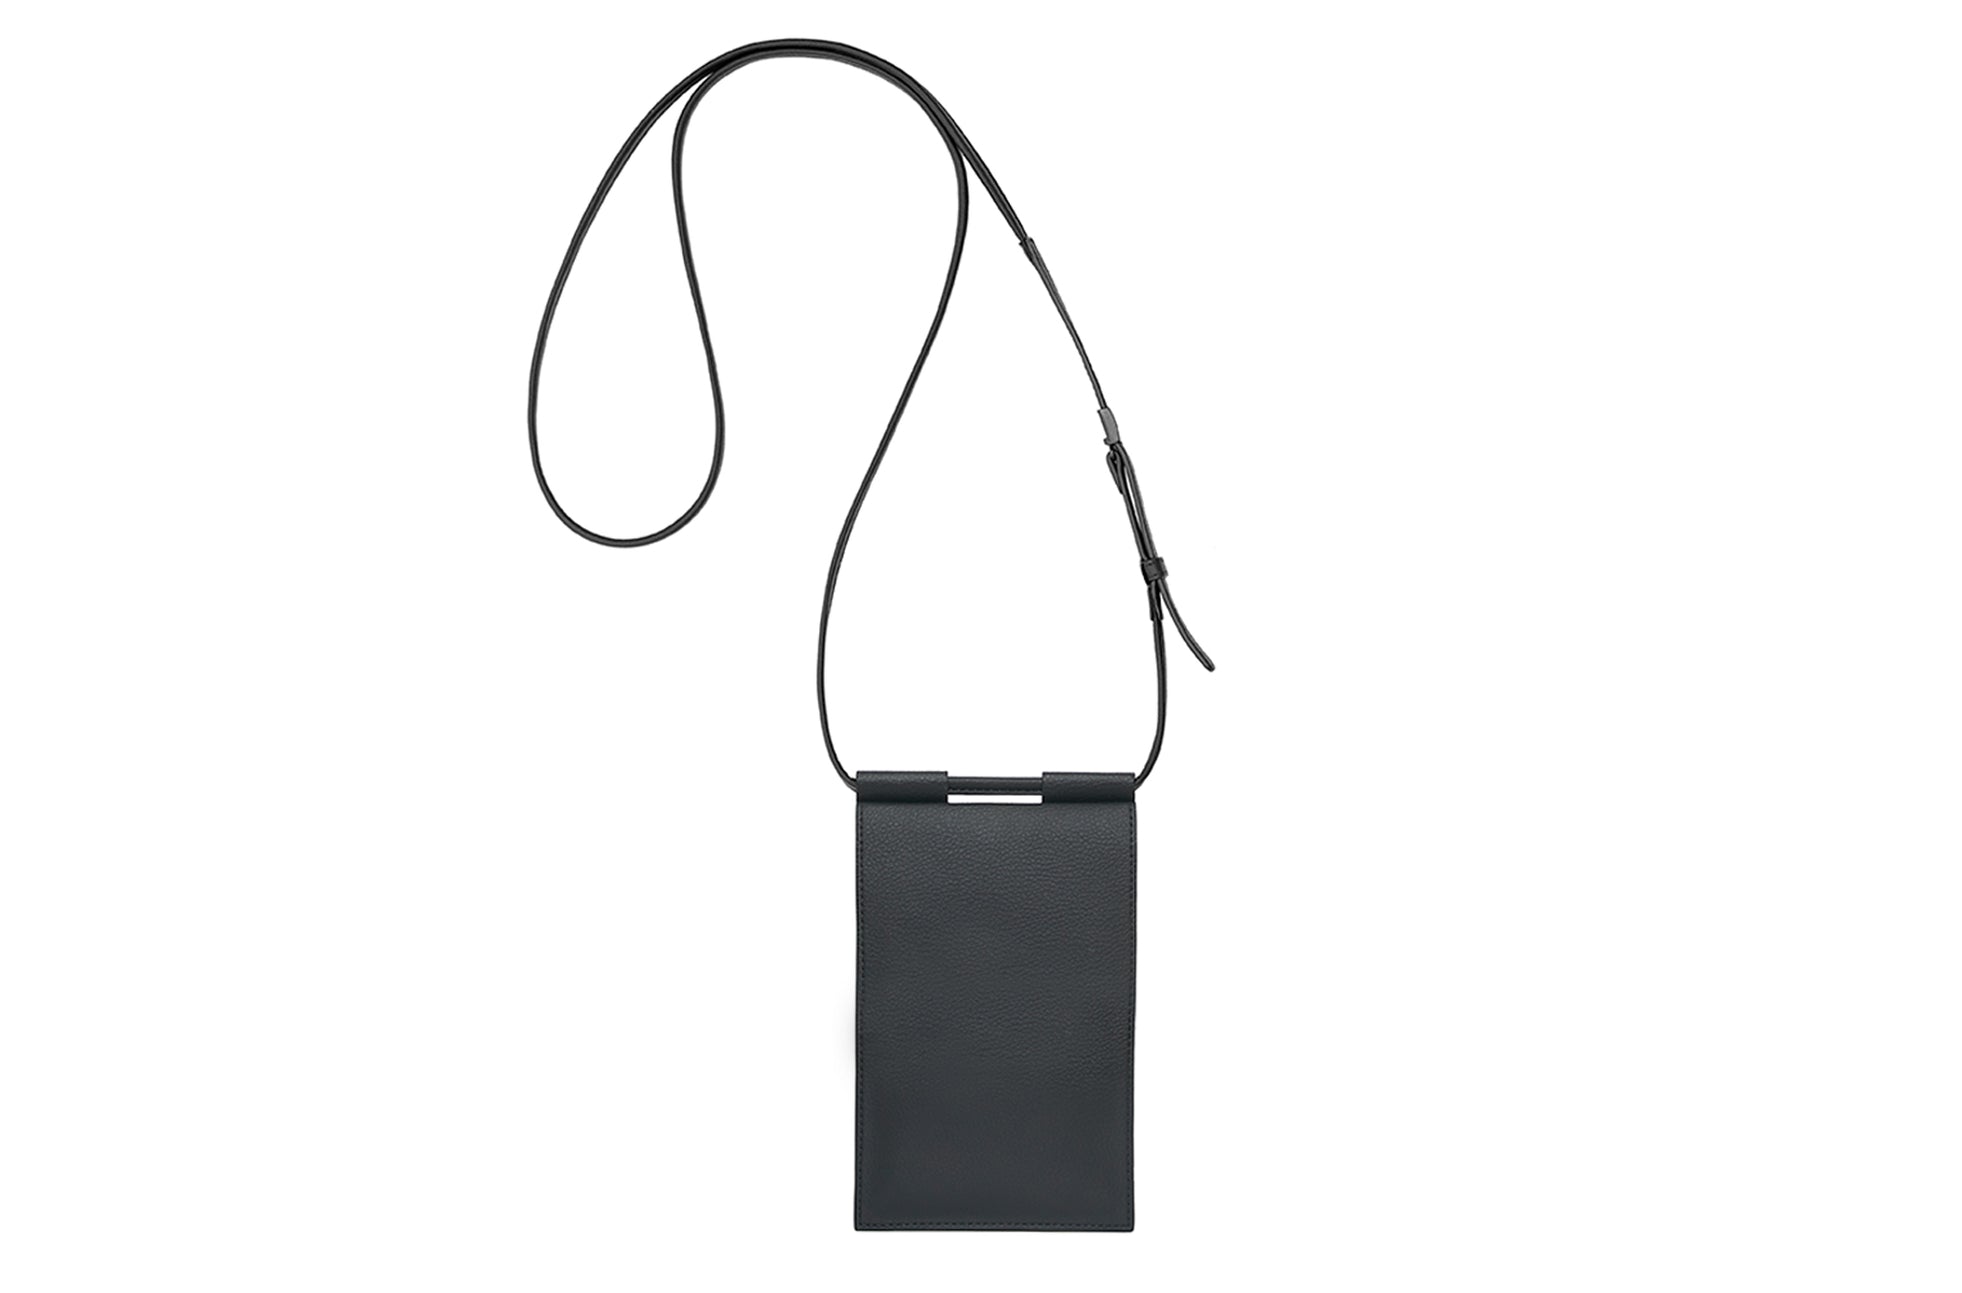 The Micro Bag in Technik-Leather in Black image 3